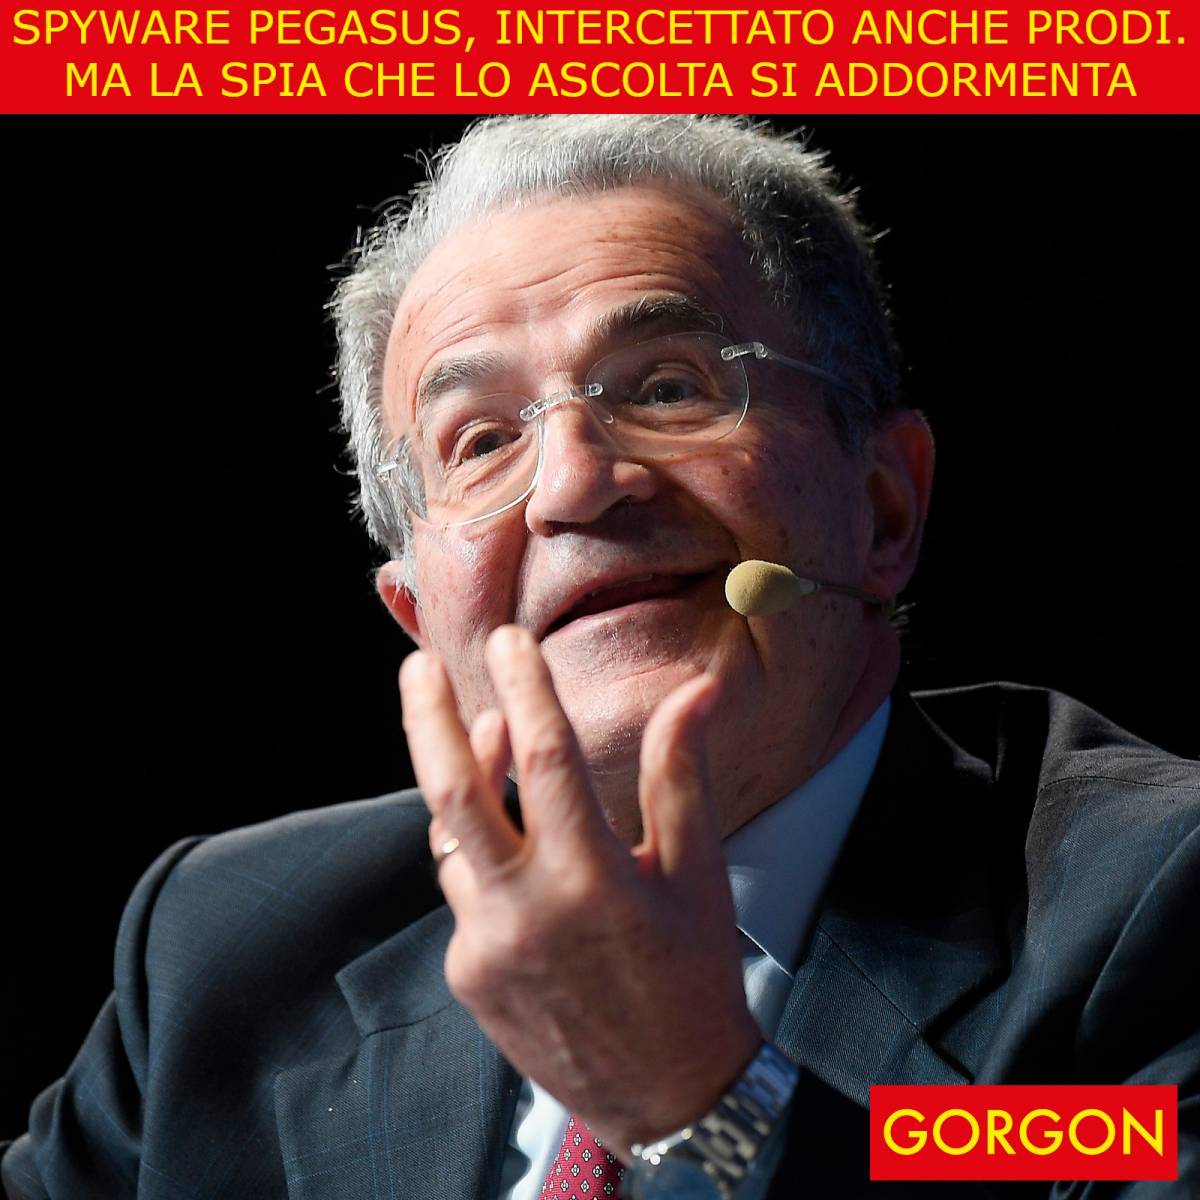 "Sono inadeguati...". L'ultima lezioncina del prof Prodi